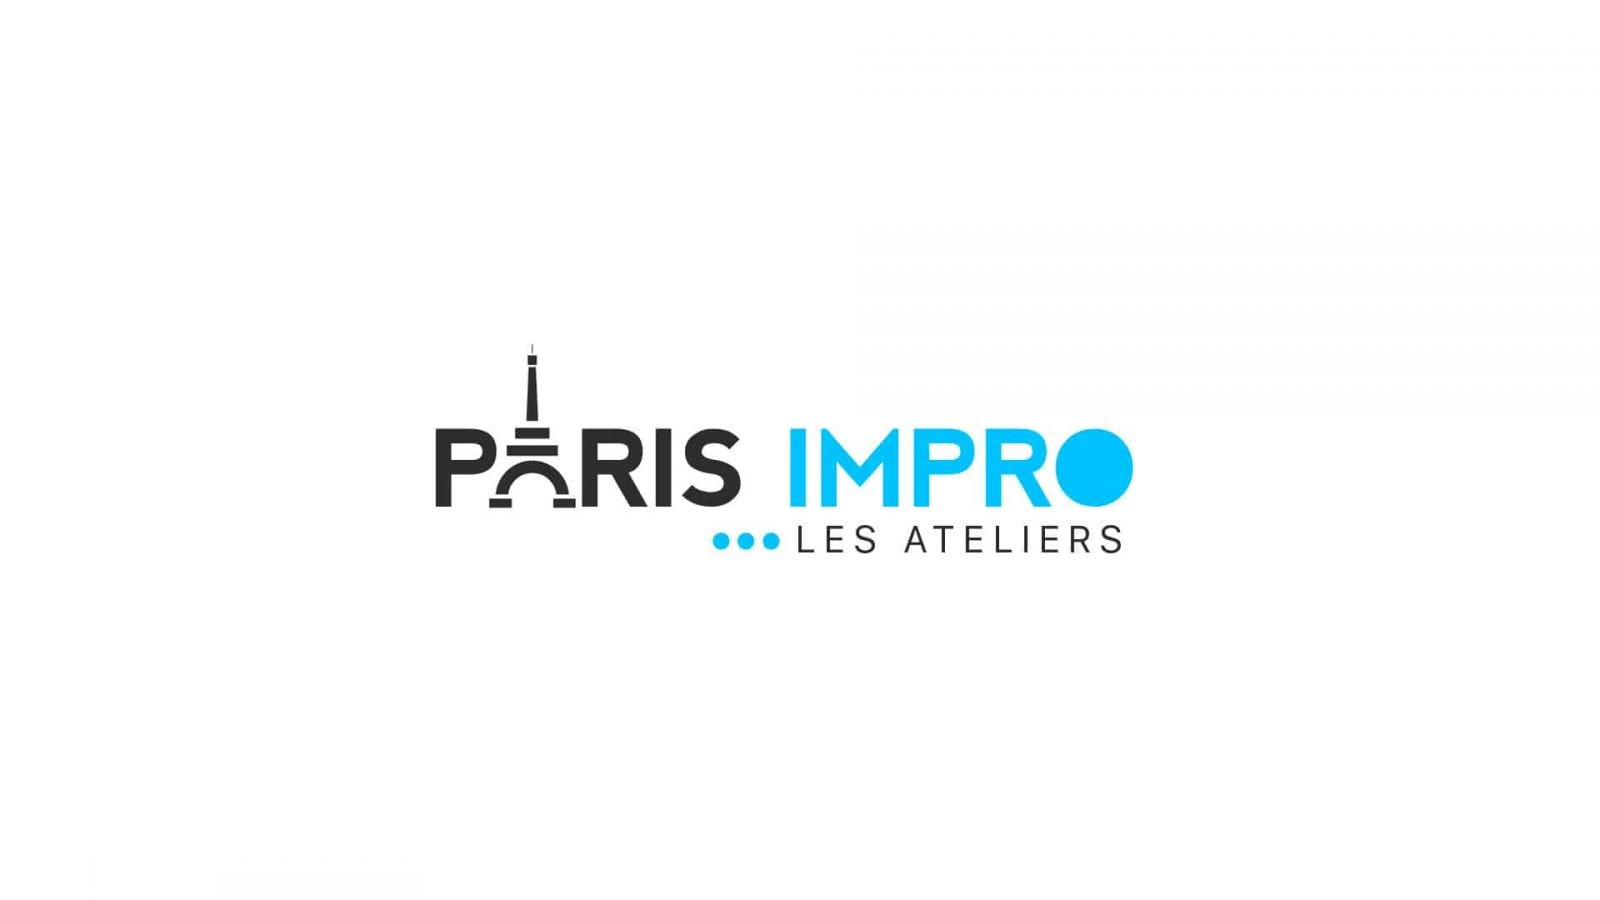 Paris Impro - Les Ateliers